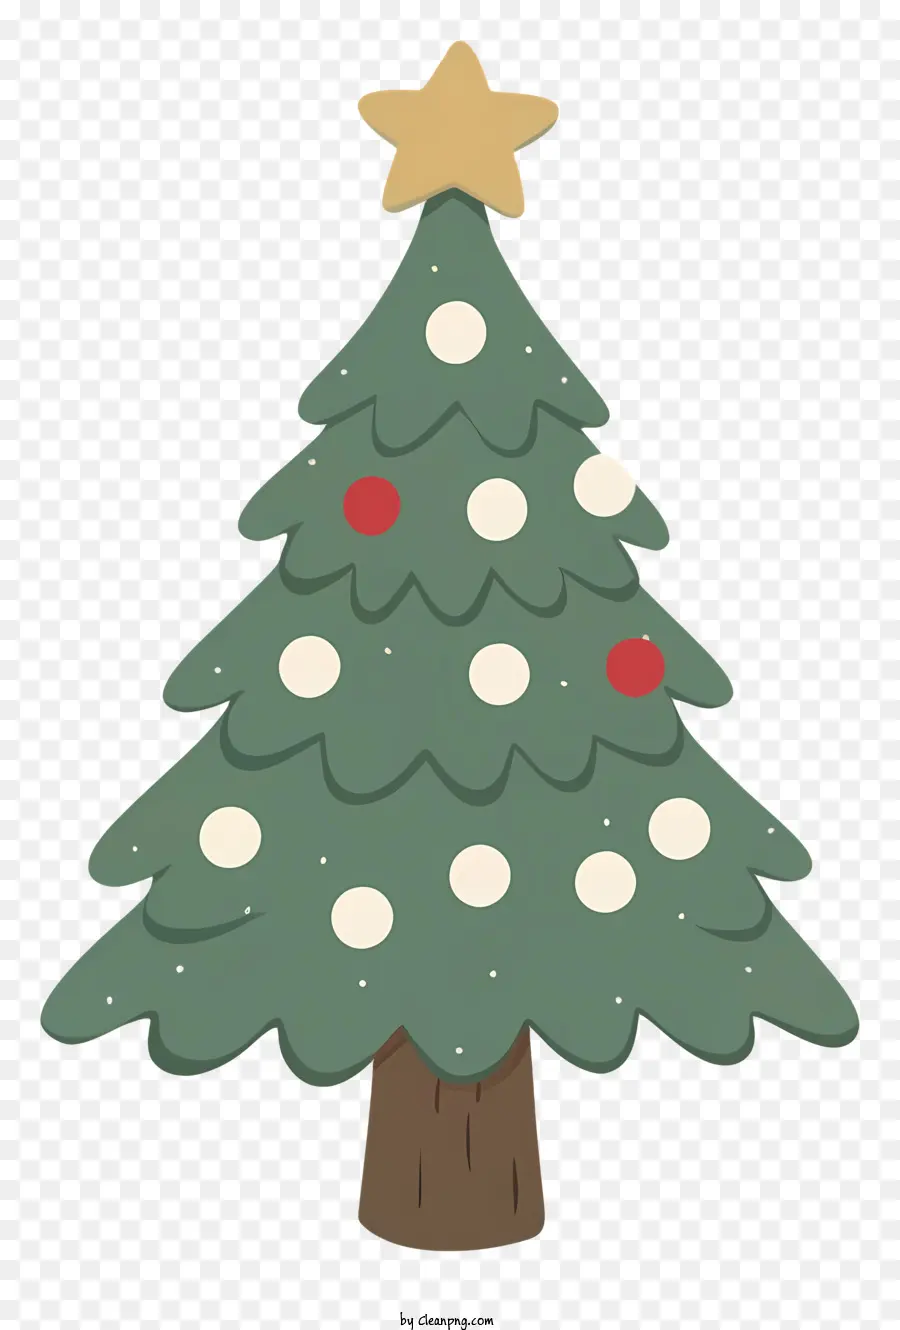 Weihnachtsbaum - Grüner Weihnachtsbaum mit weißen Tupfen